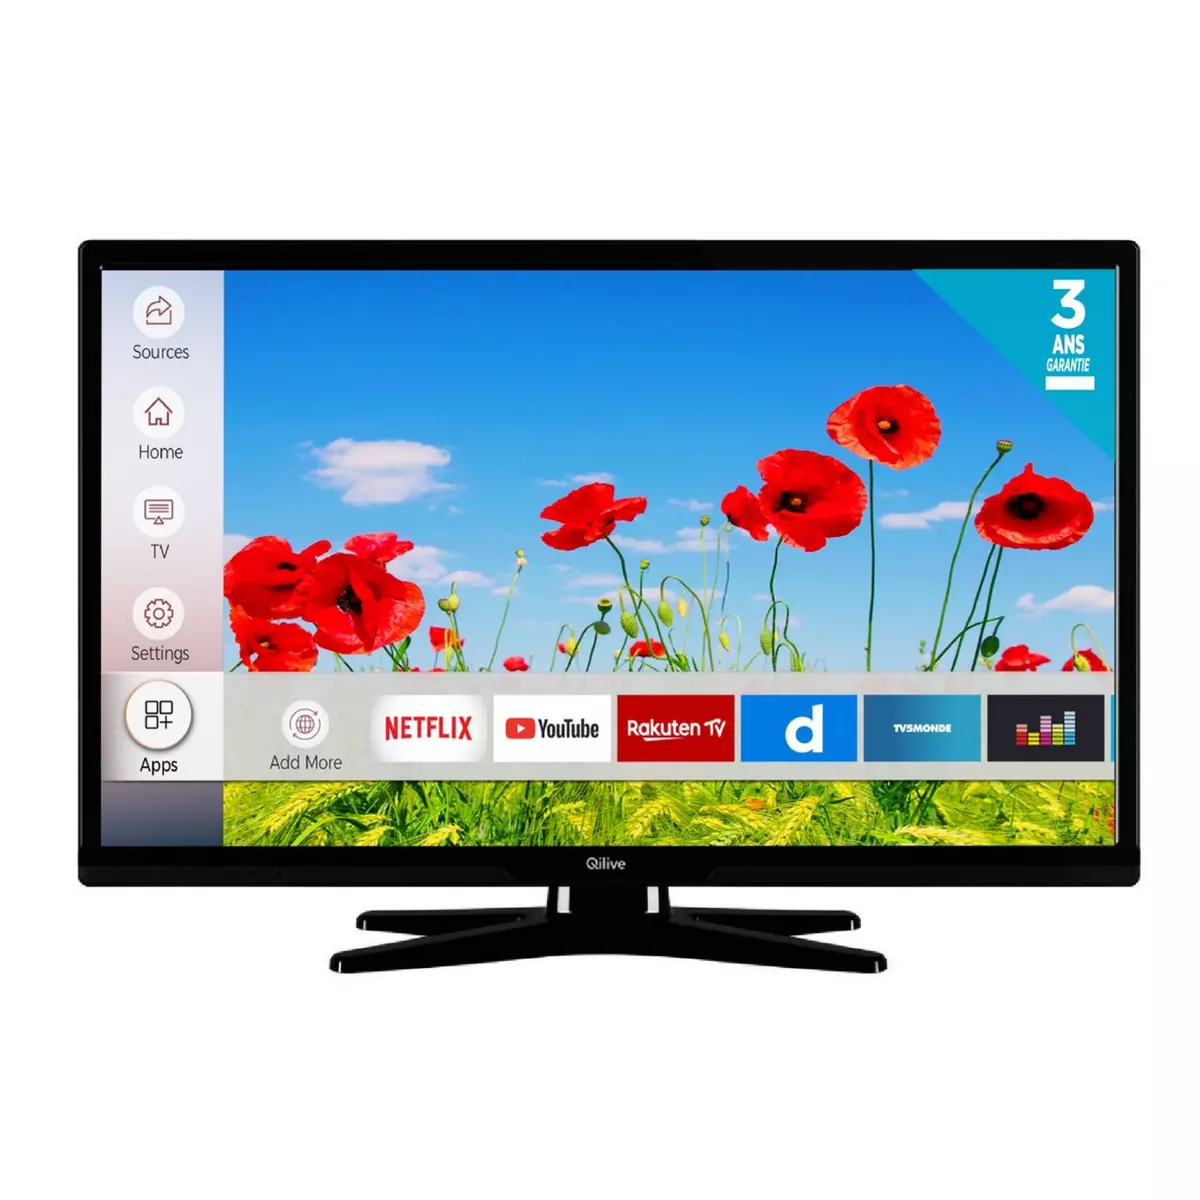 QILIVE Q24-822 TV LED HD 60 cm Smart TV